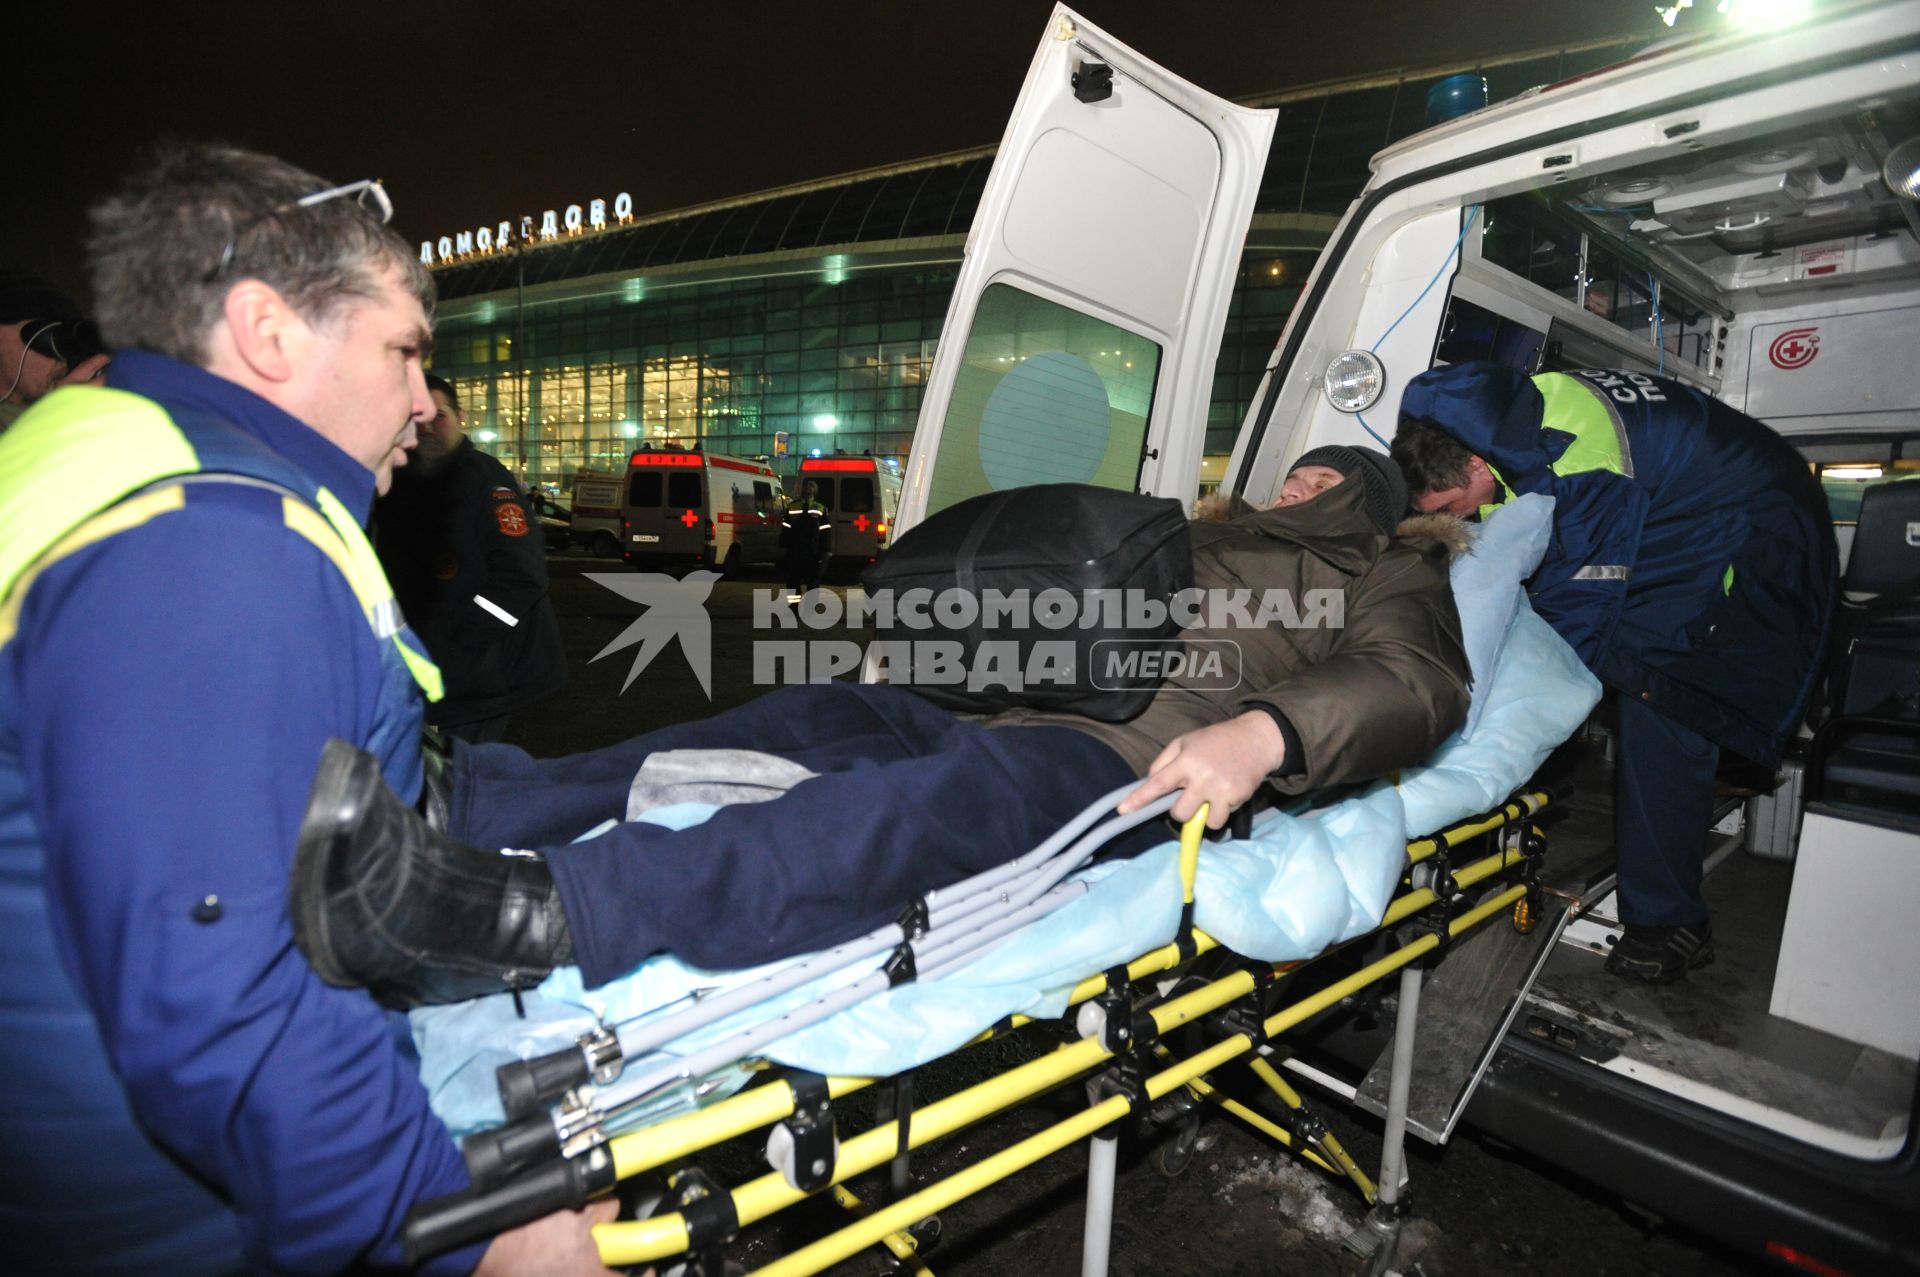 Московская область. 24 января 2011 г. Врачи скорой помощи эвакуируют пострадавшего в результате взрыва в аэропорту Домодедово.